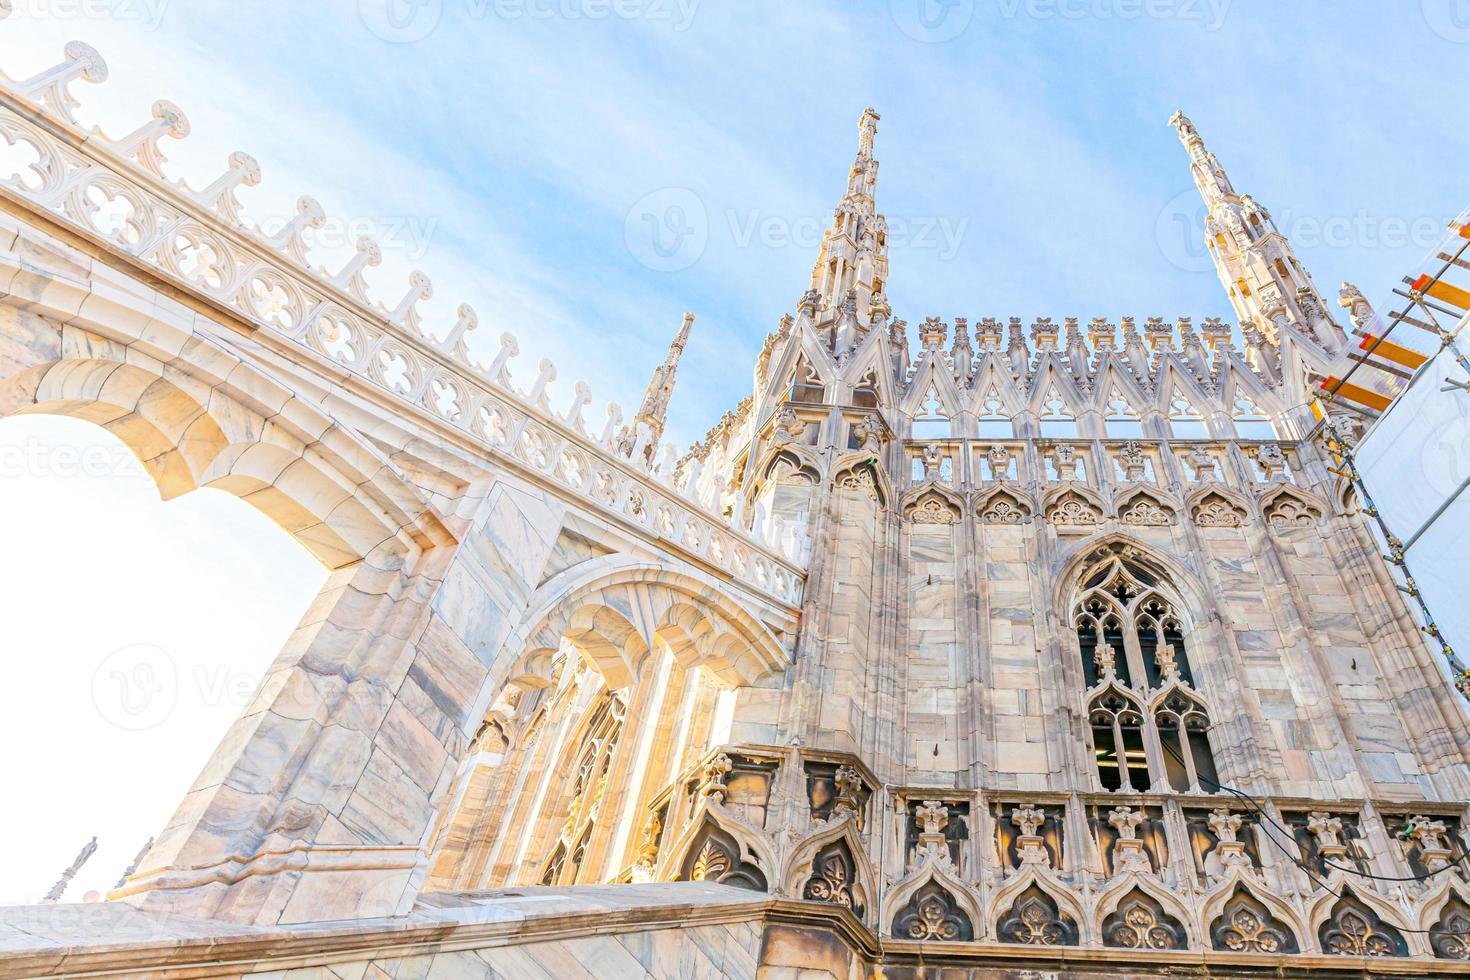 dak van de kathedraal van Milaan Duomo di Milano met gotische torenspitsen en witmarmeren beelden. top toeristische attractie op piazza in milaan, lombardia, italië. brede hoekmening van oude gotische architectuur en kunst. foto